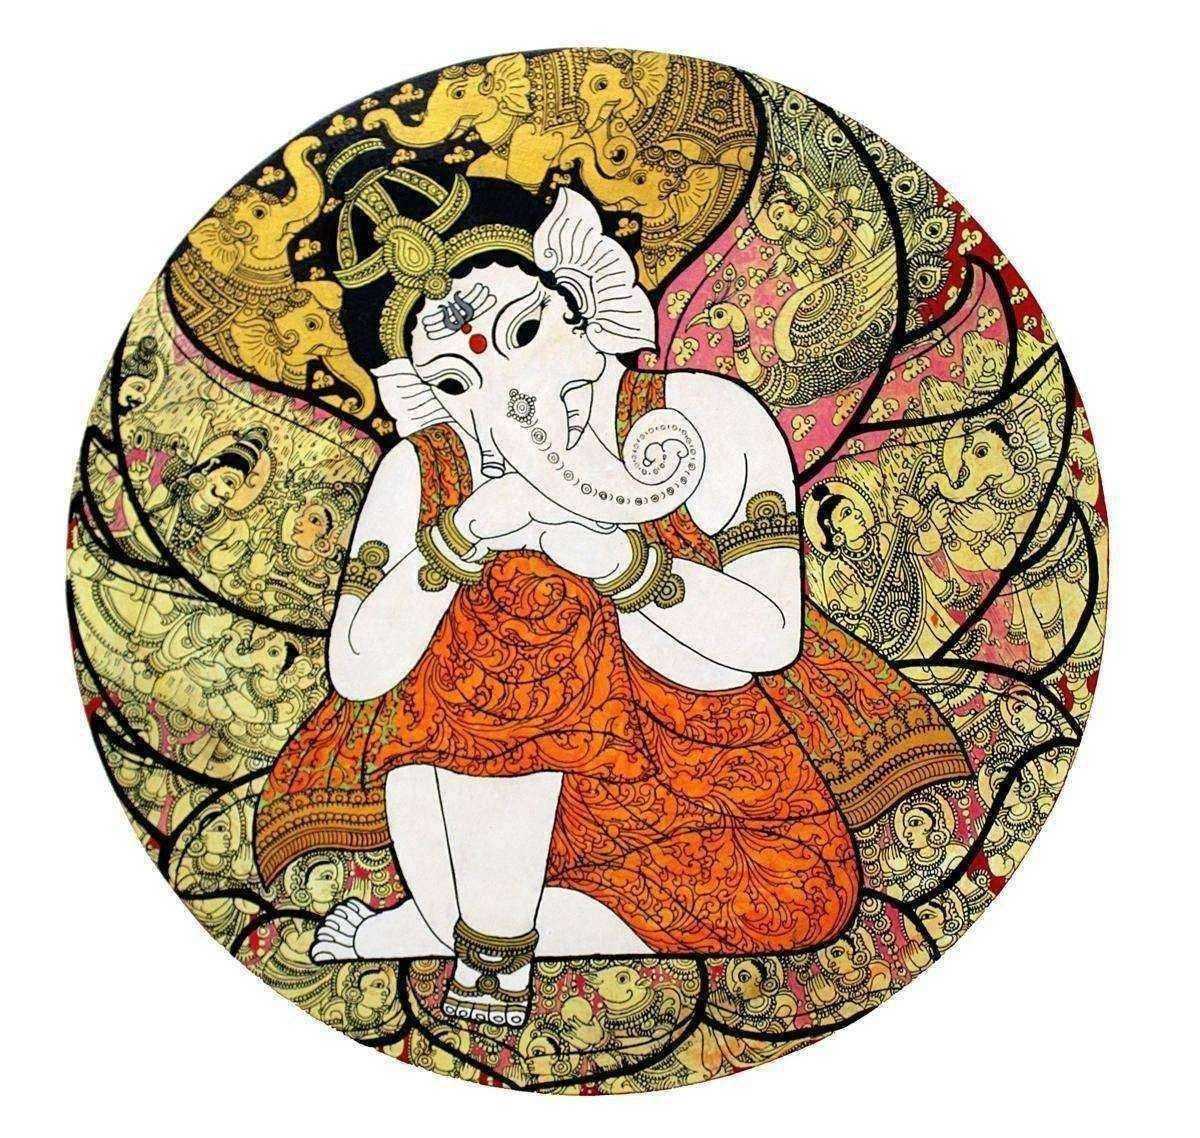 Ganesha Kalamkari painting